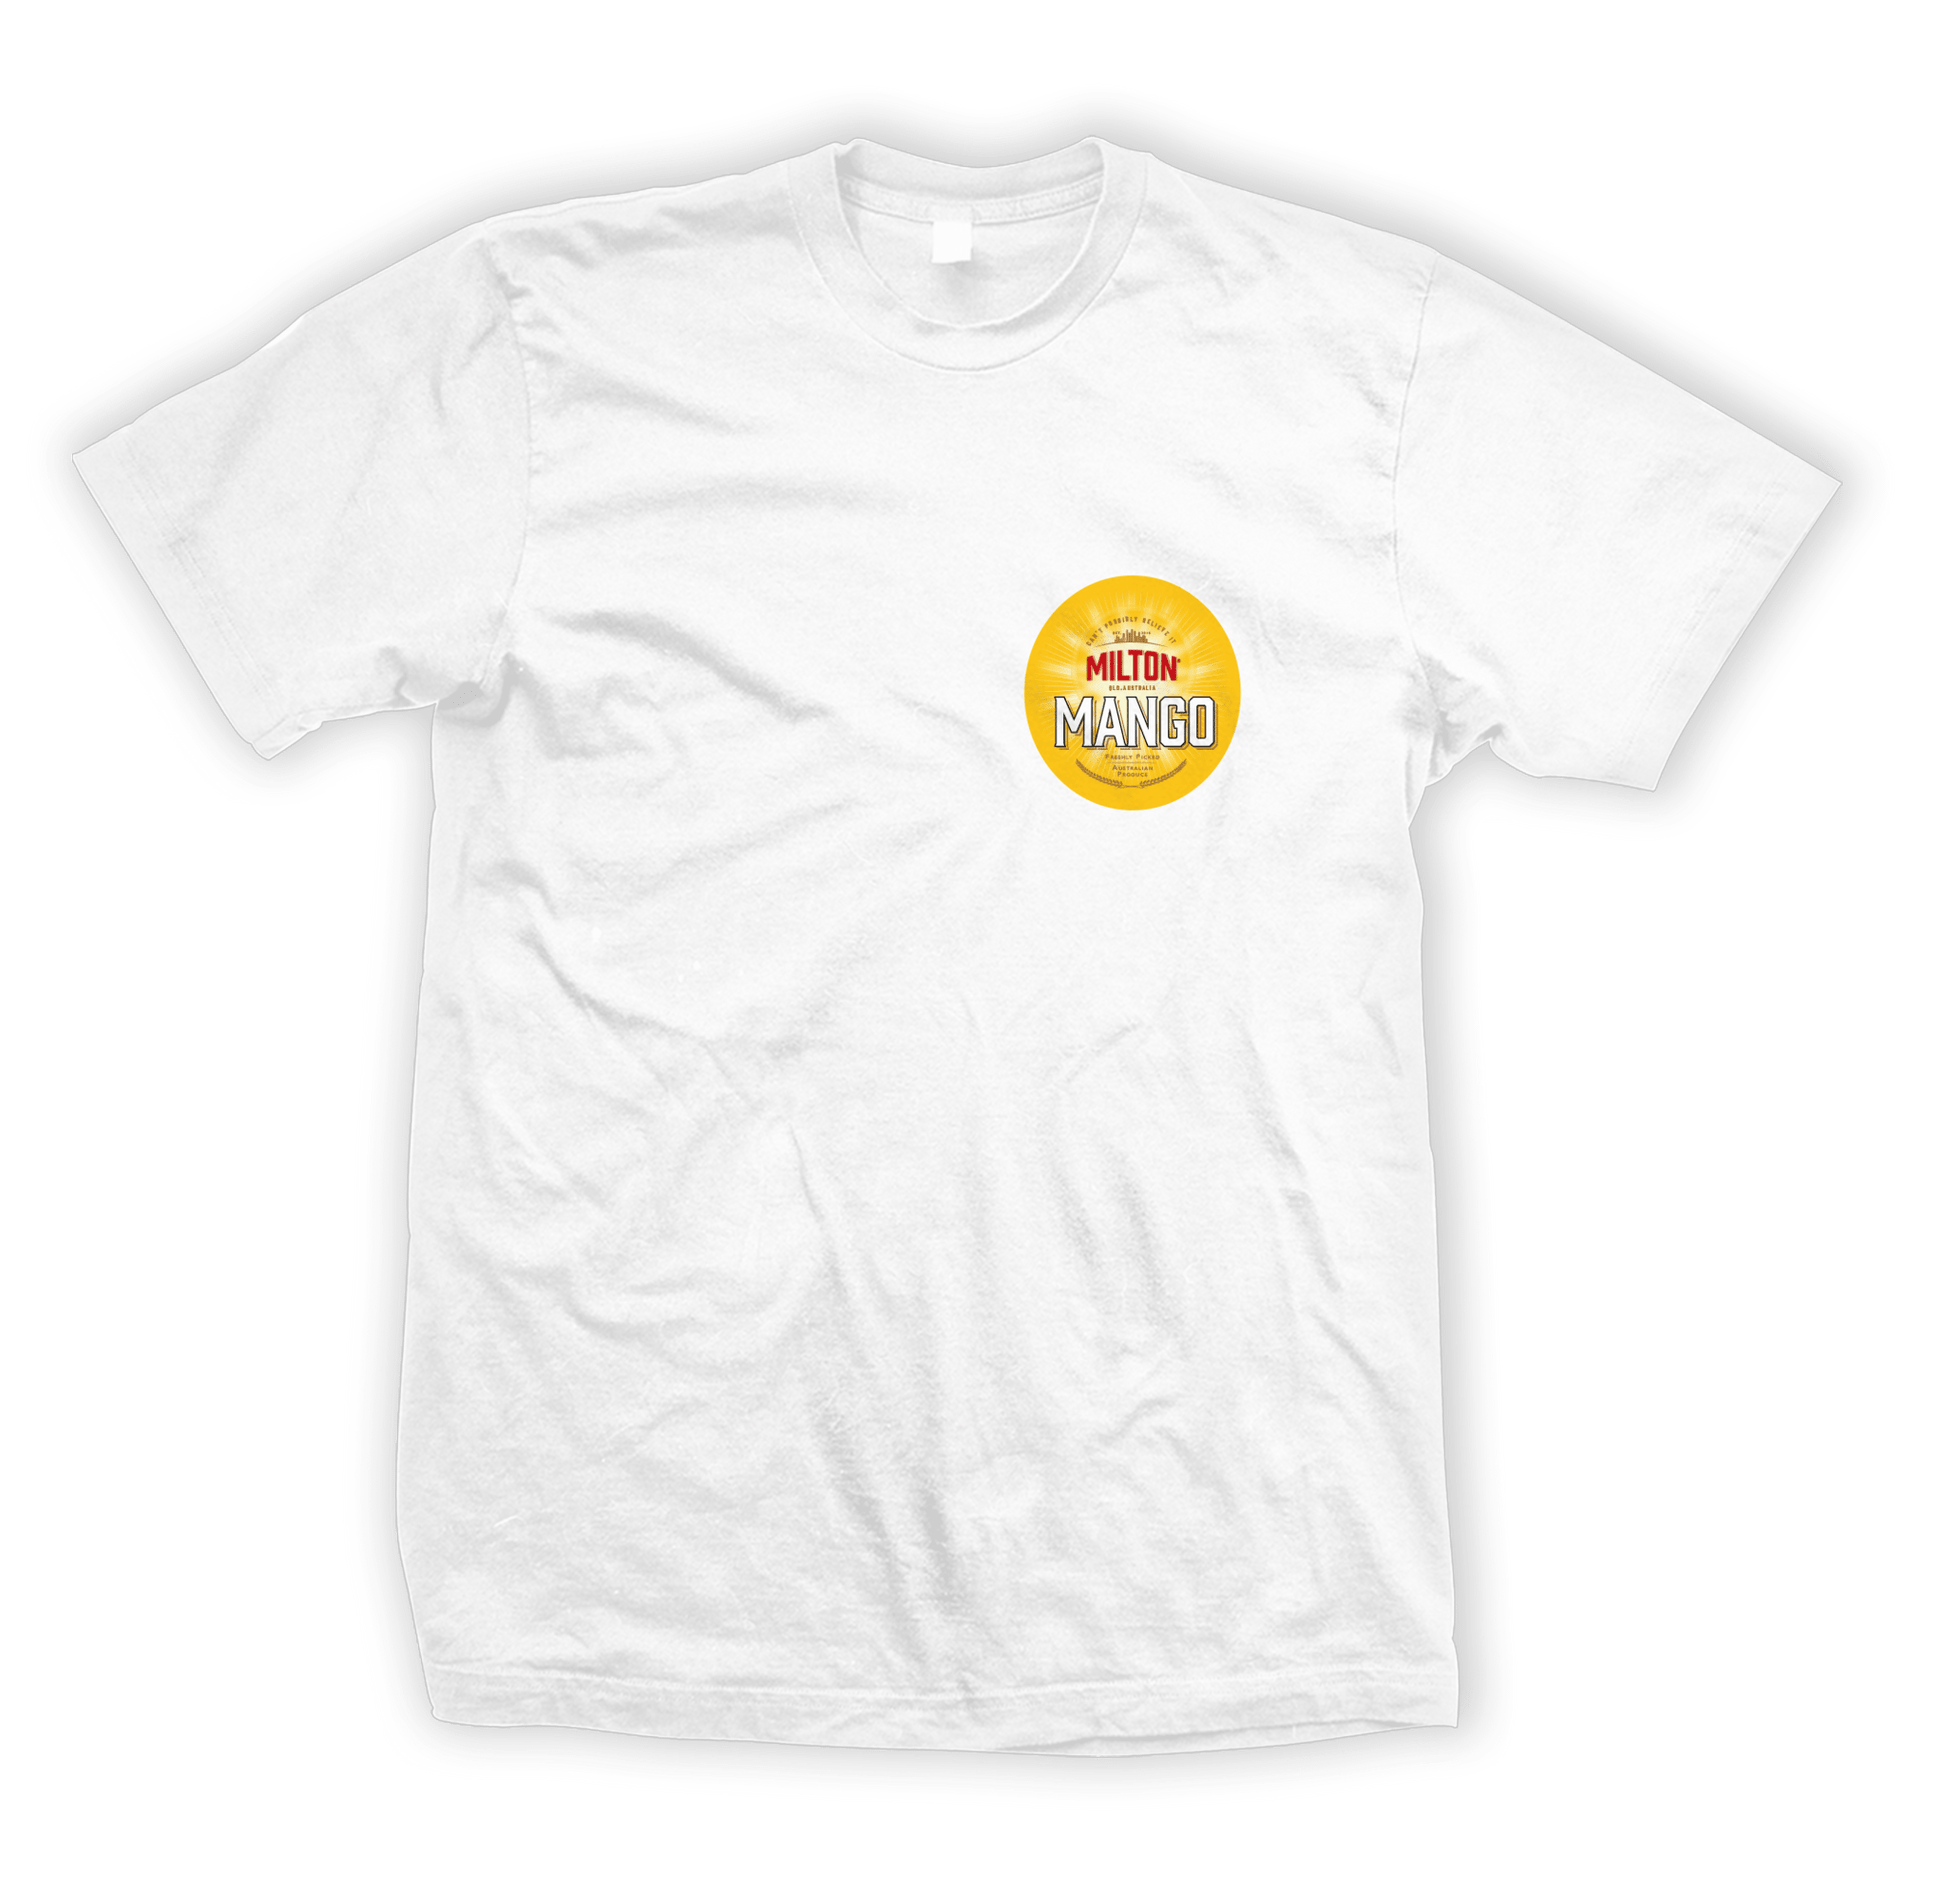 The Exchange Tee White T-Shirts Milton Mango